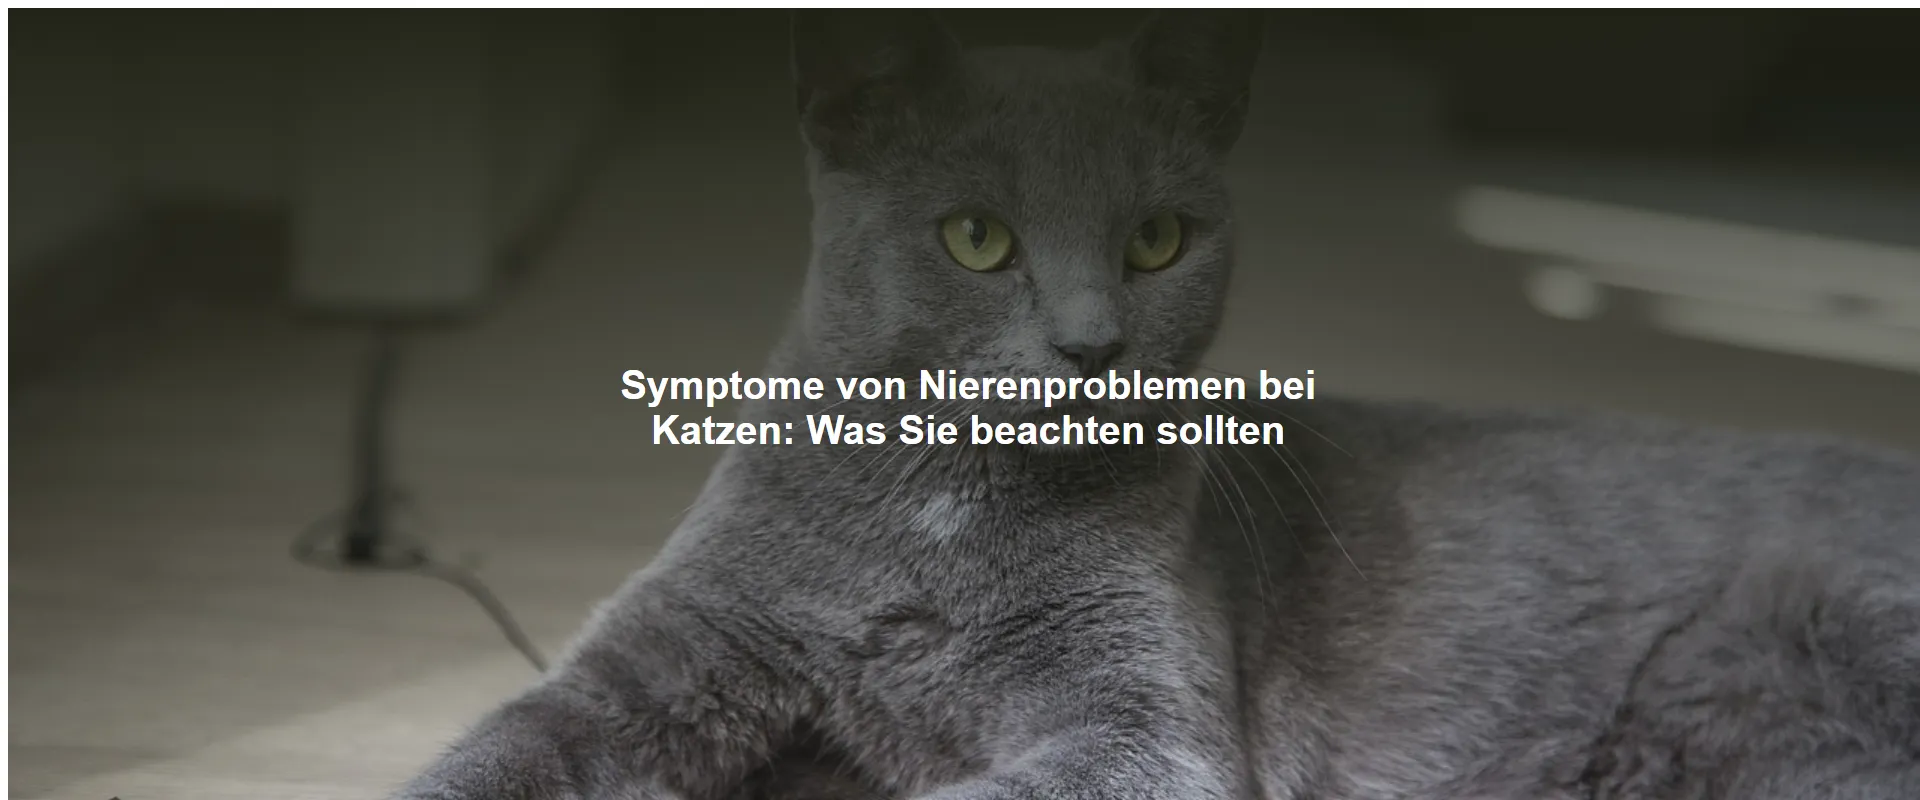 Symptome von Nierenproblemen bei Katzen – Was Sie beachten sollten